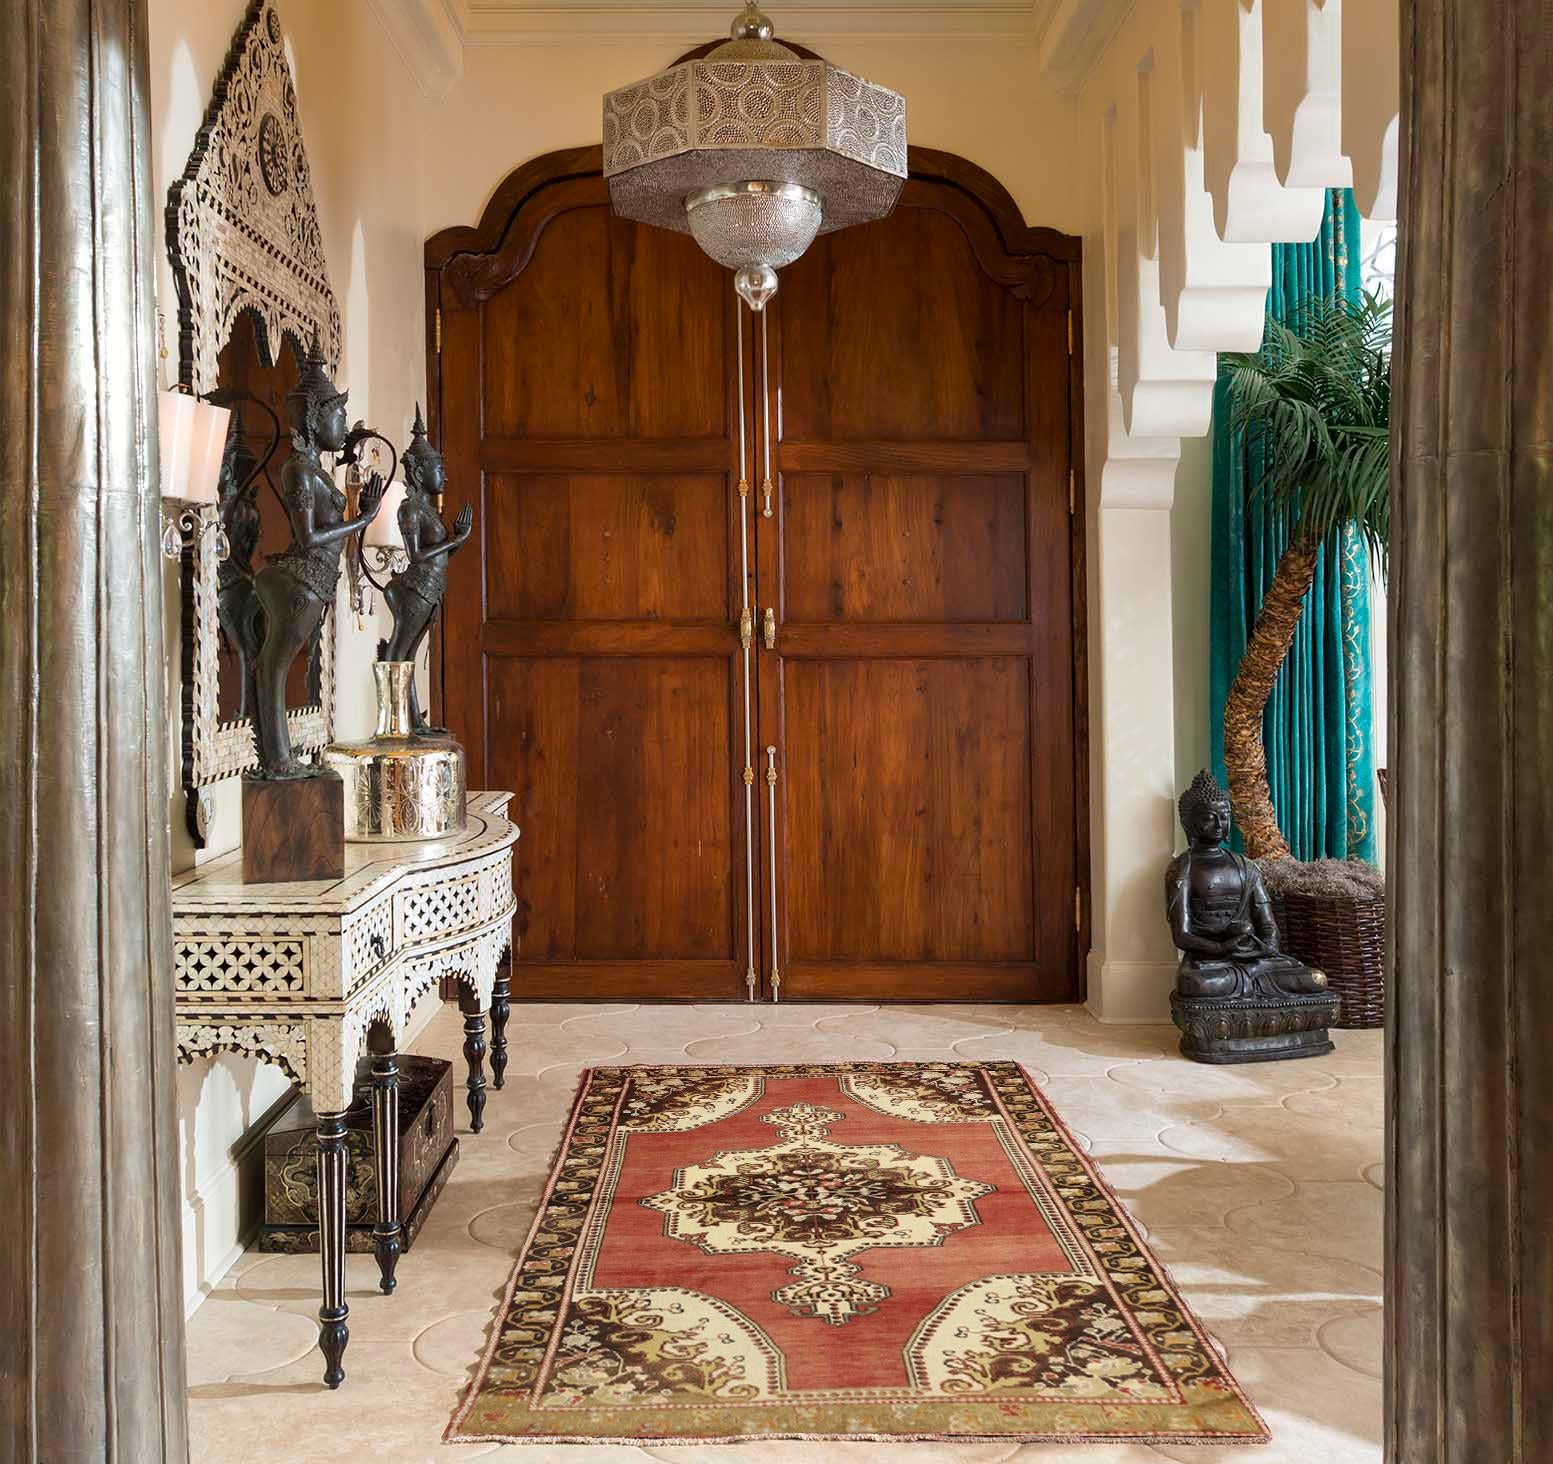 50761, tapis d'accent vintage turc Oushak de style rustique Tudor. Ce tapis d'accent Oushak de style traditionnel présente un médaillon complexe de brun chaud, de charbon et d'ivoire crémeux avec un motif floral stylisé central accentué de délicates